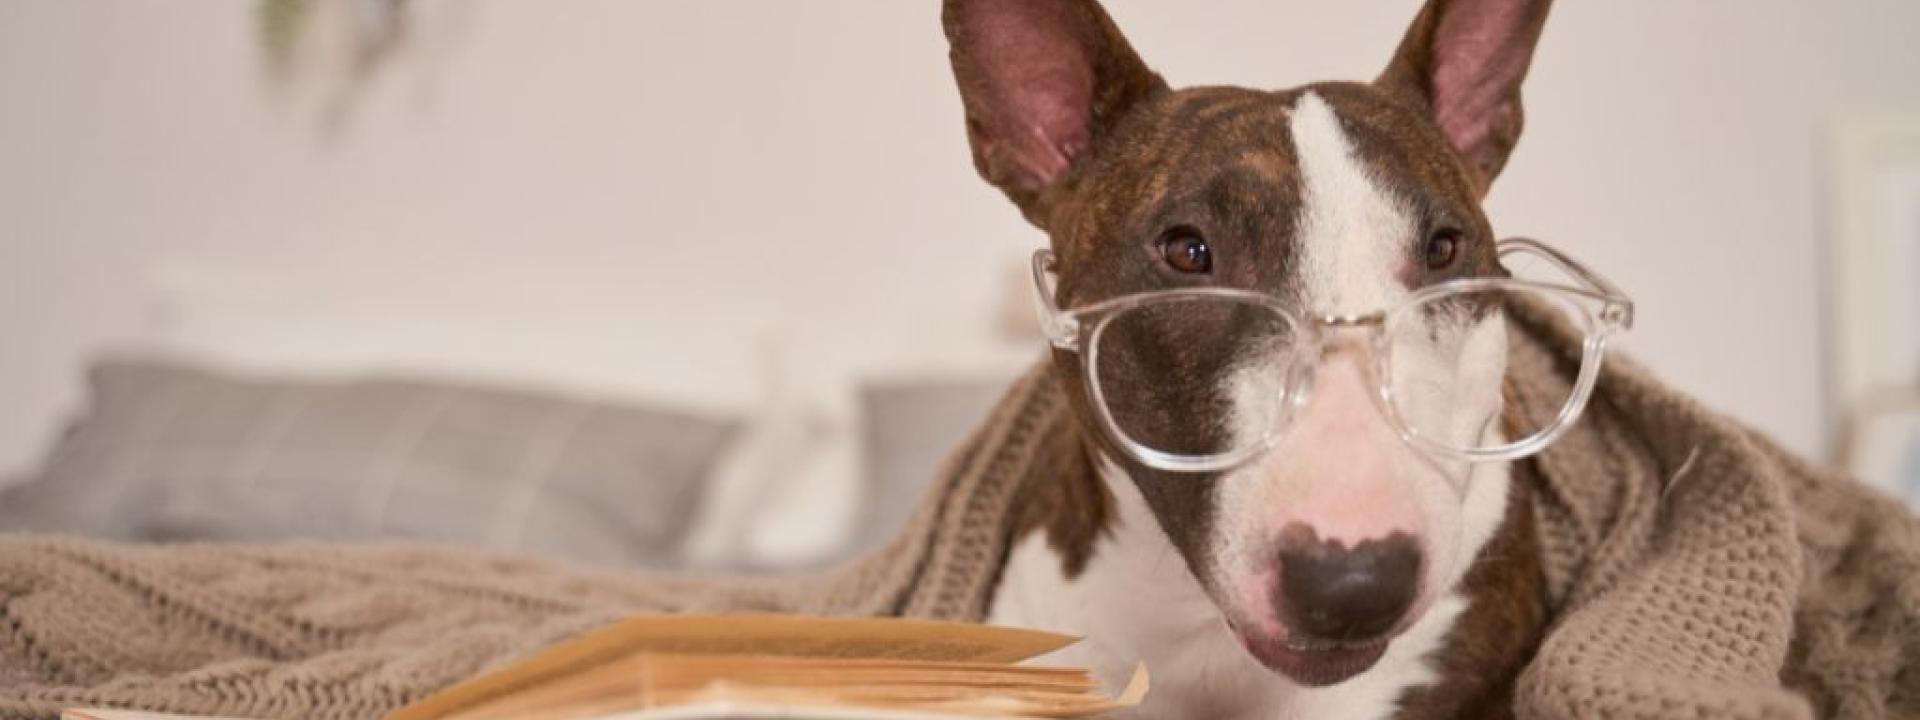 Bull terrier wearing glasses.